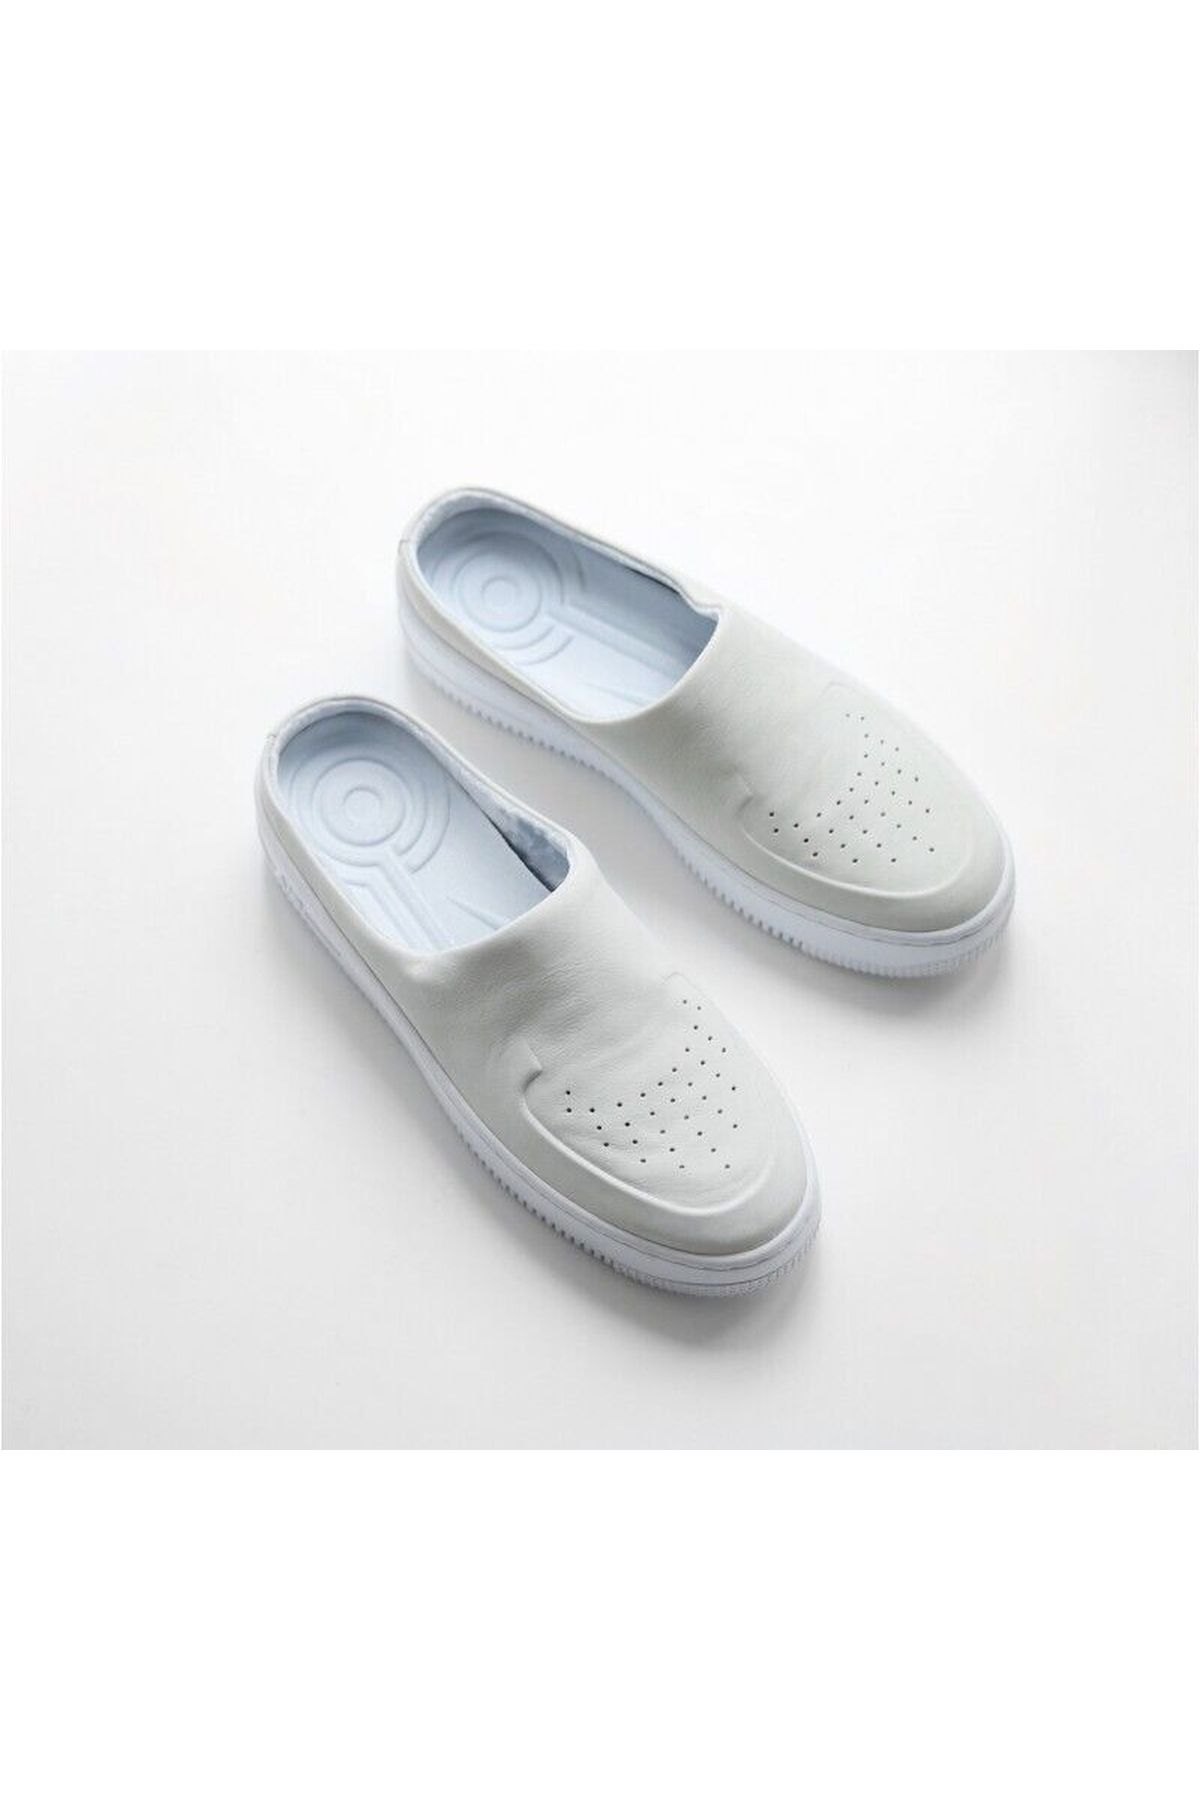 Nike Air Force 1 Lover Xx Off White Women's 7.5 Slip On Shoes Sandal Ao1523-100